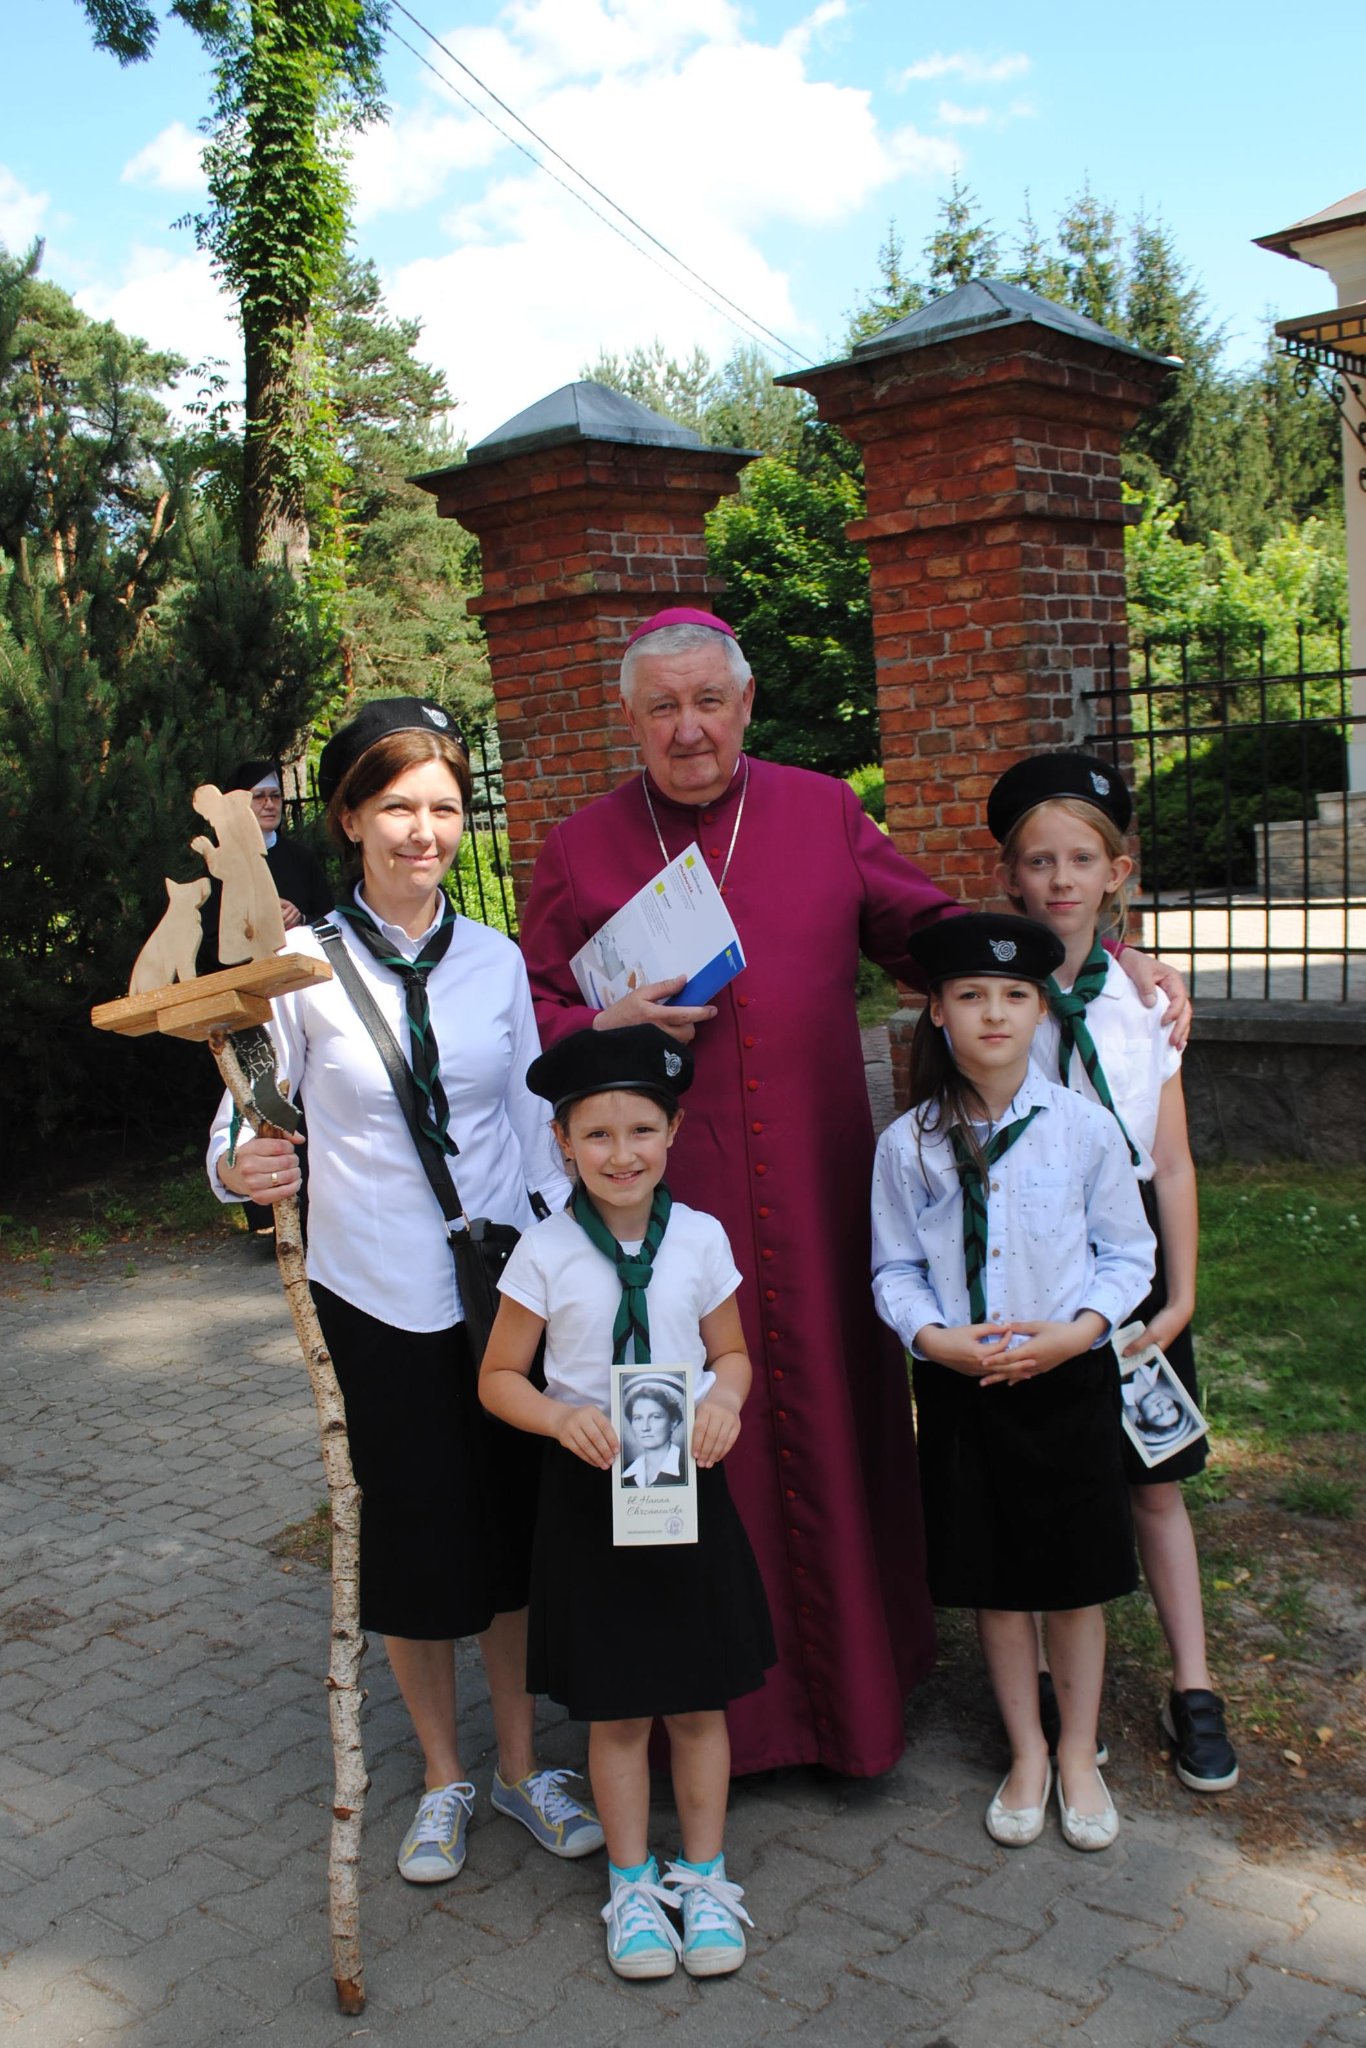 Biskup katolicki z czterema dziewczynkami - skautkami, ubranymi w białe koszule, czarne spódniczki. W tle ceglane ogrodzenie i zieleń.